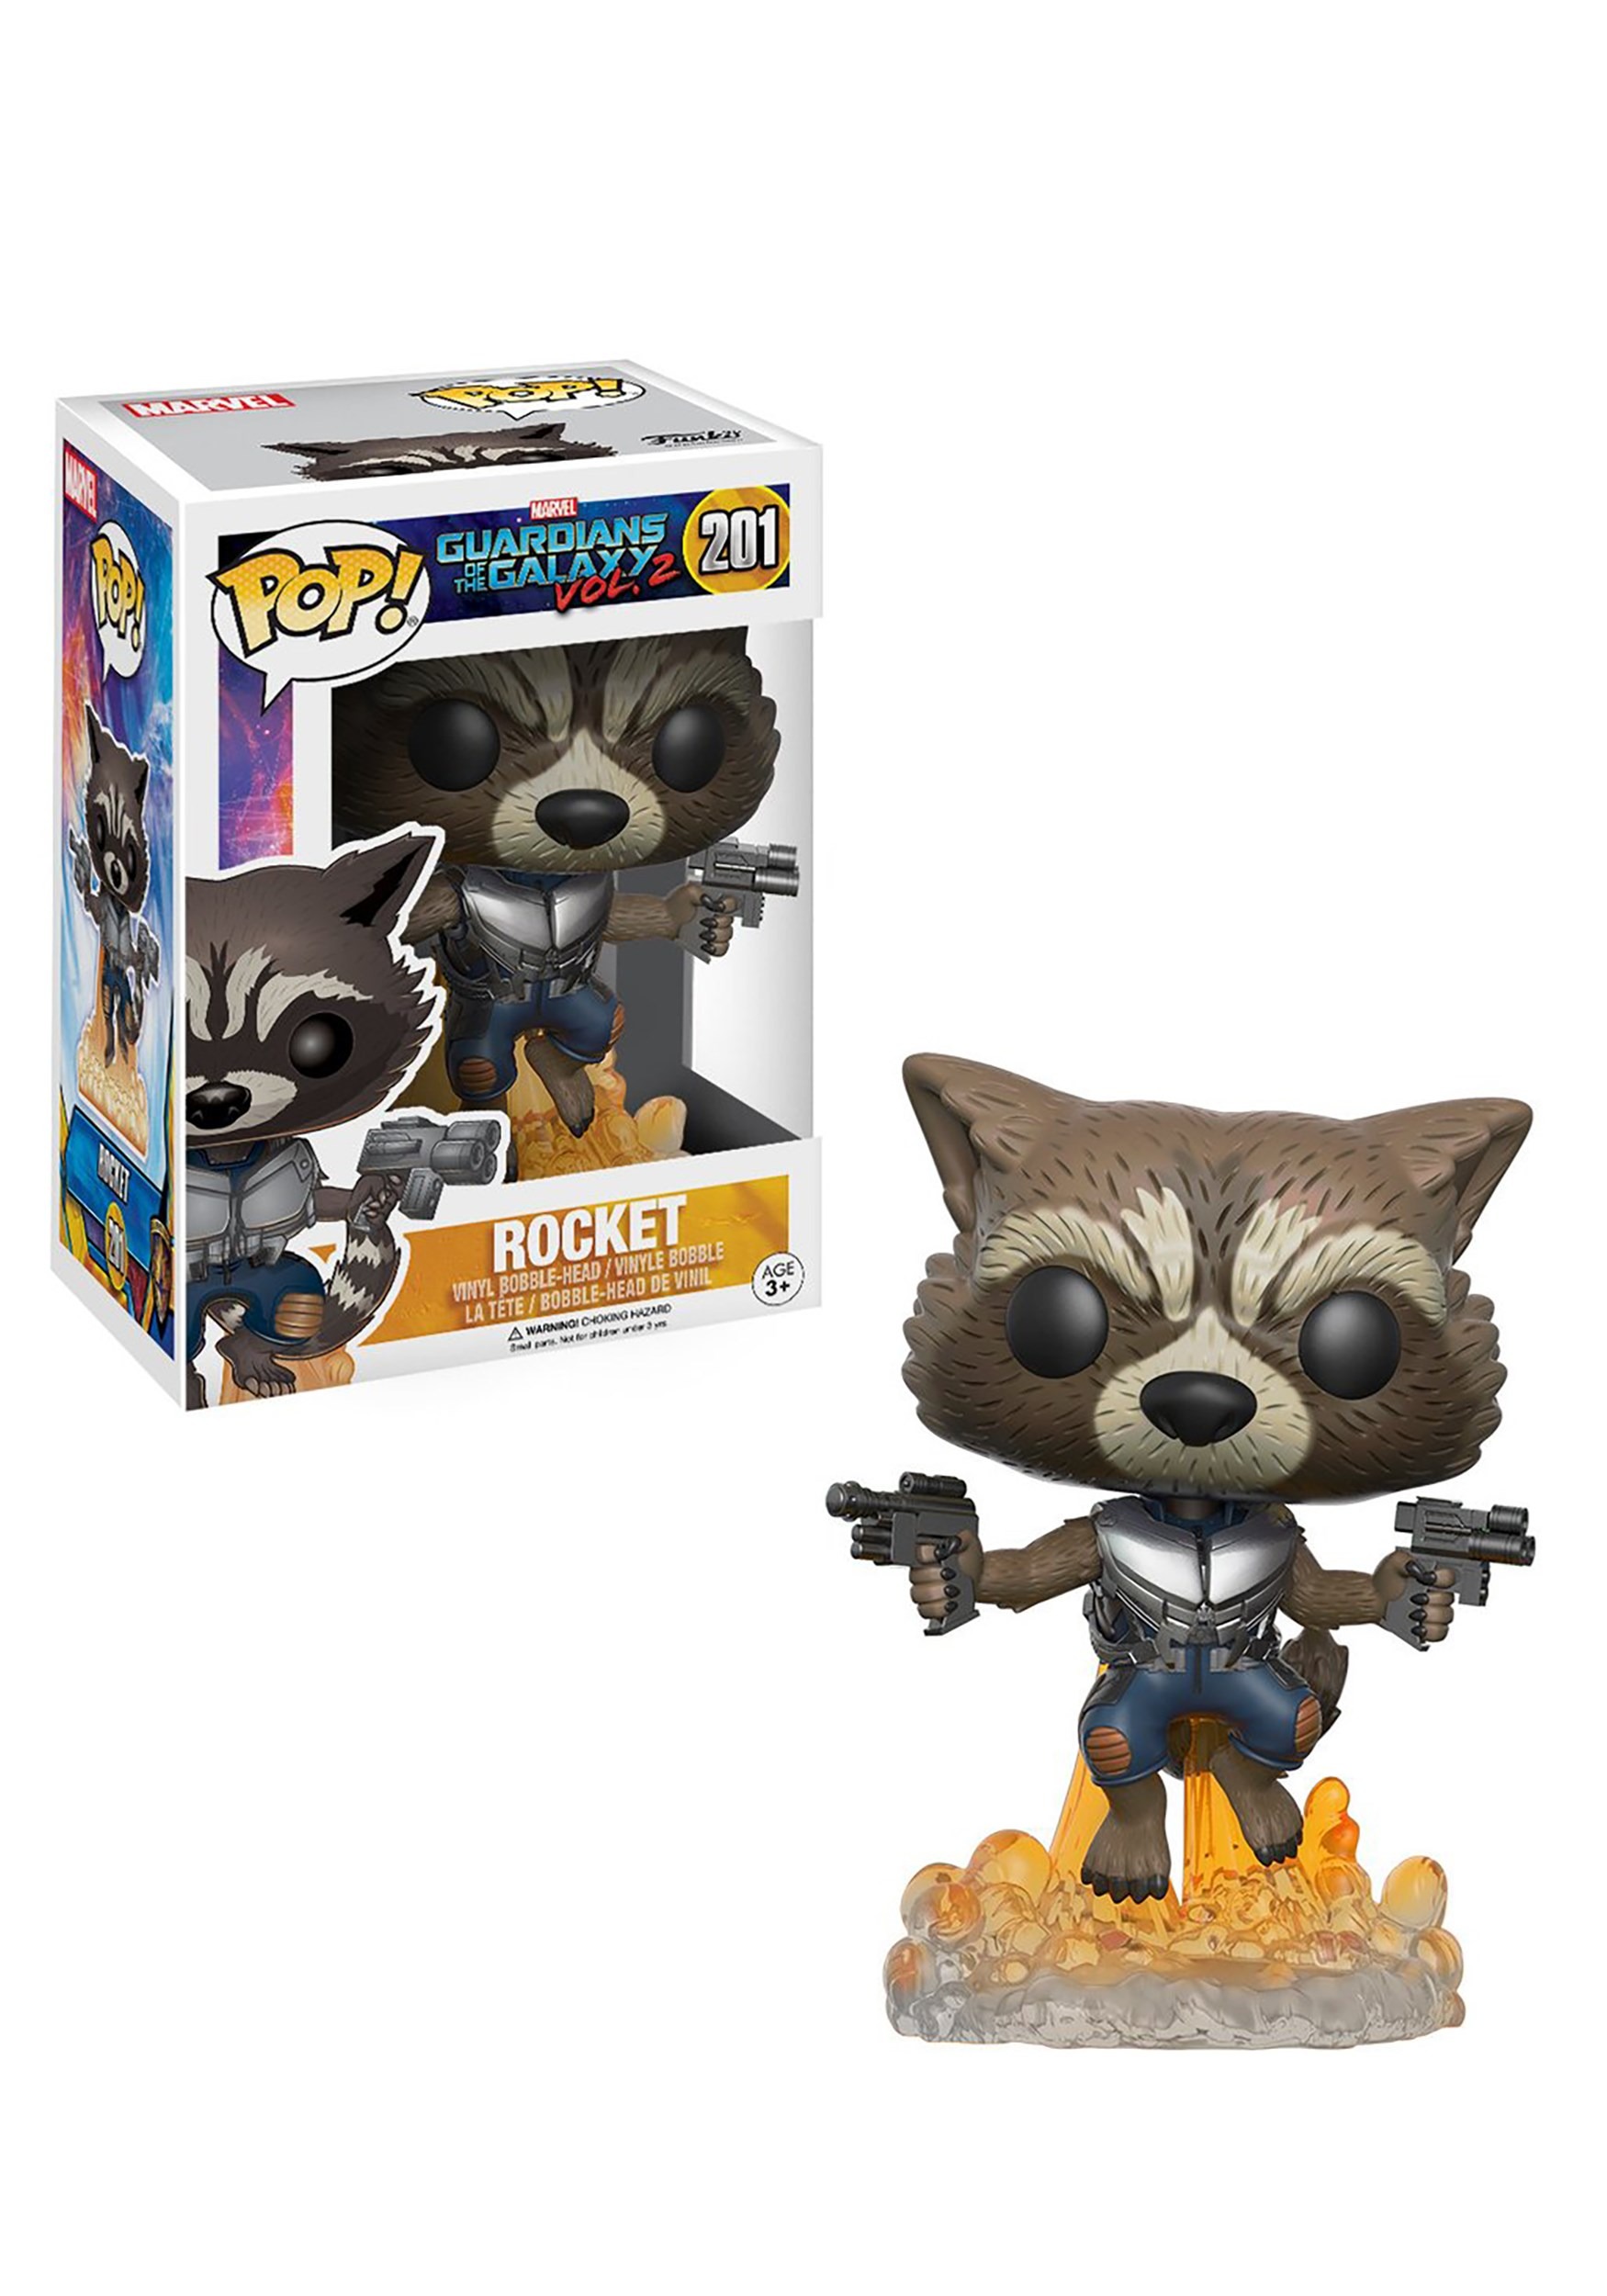 POP Rocket Raccoon Bobblehead Figure from Guardians 2